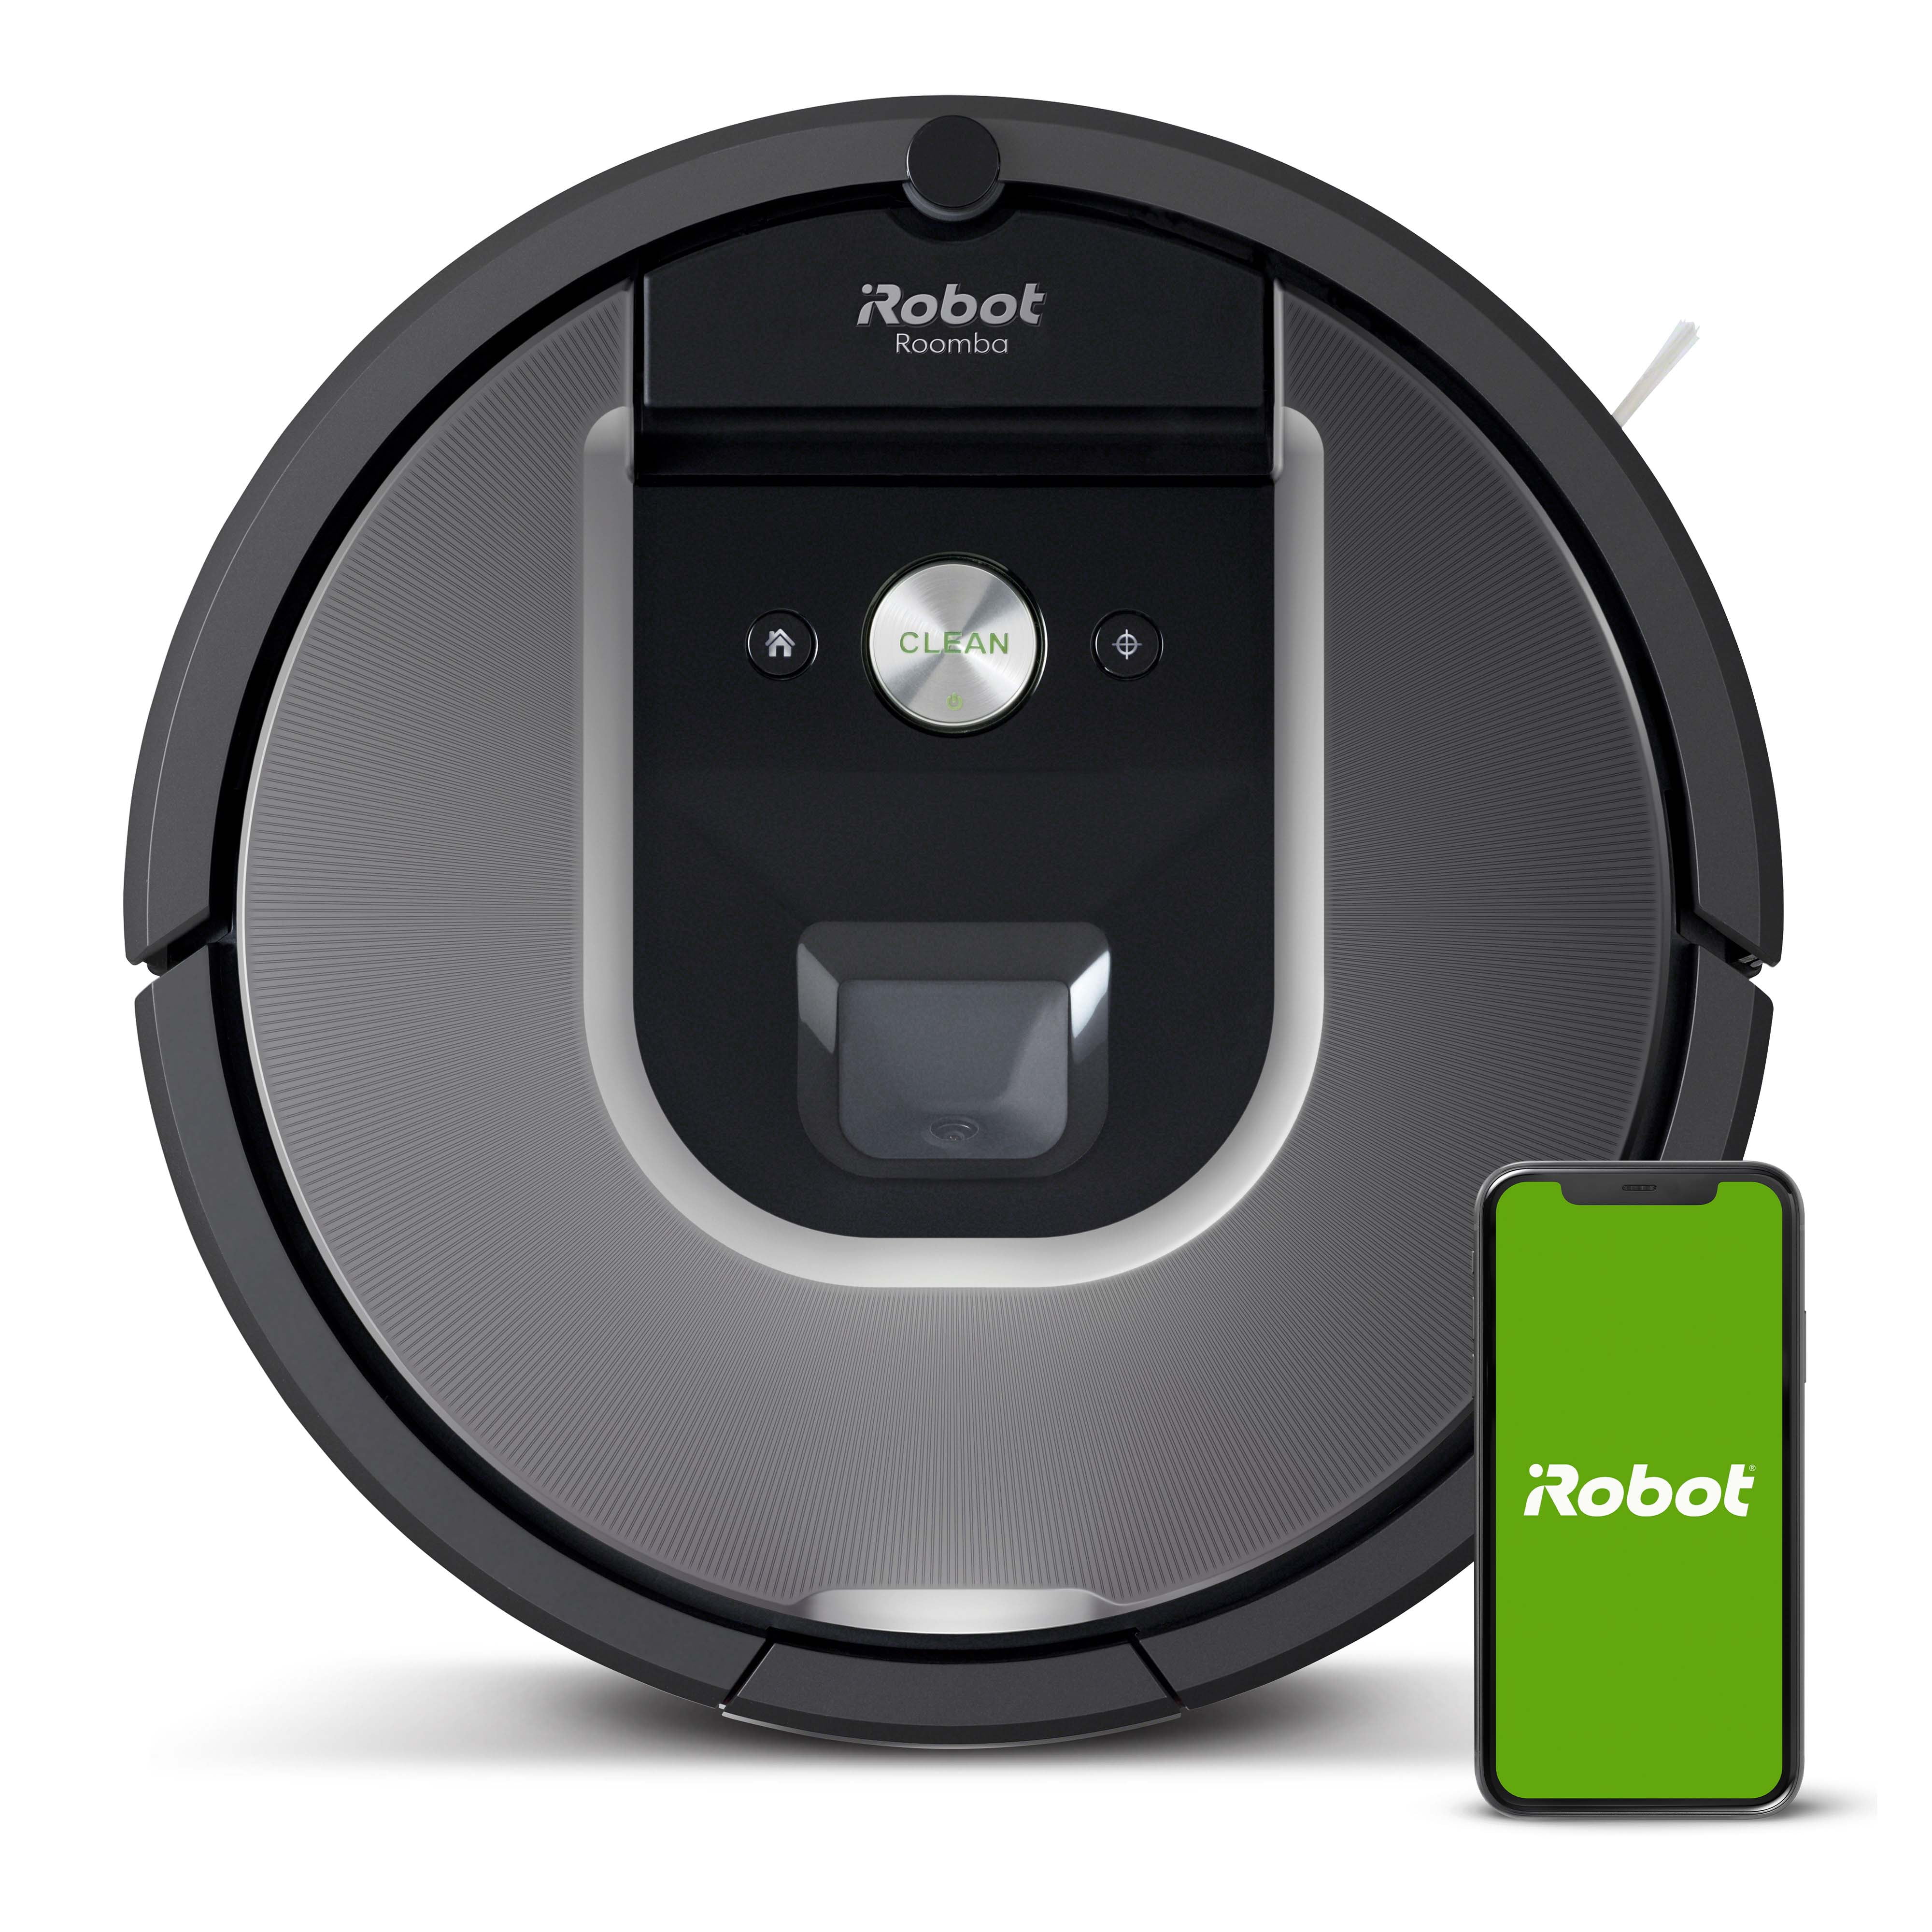 Irobot Roomba 960 Robot Vacuum Wi Fi, Does Irobot Work On Tile Floors